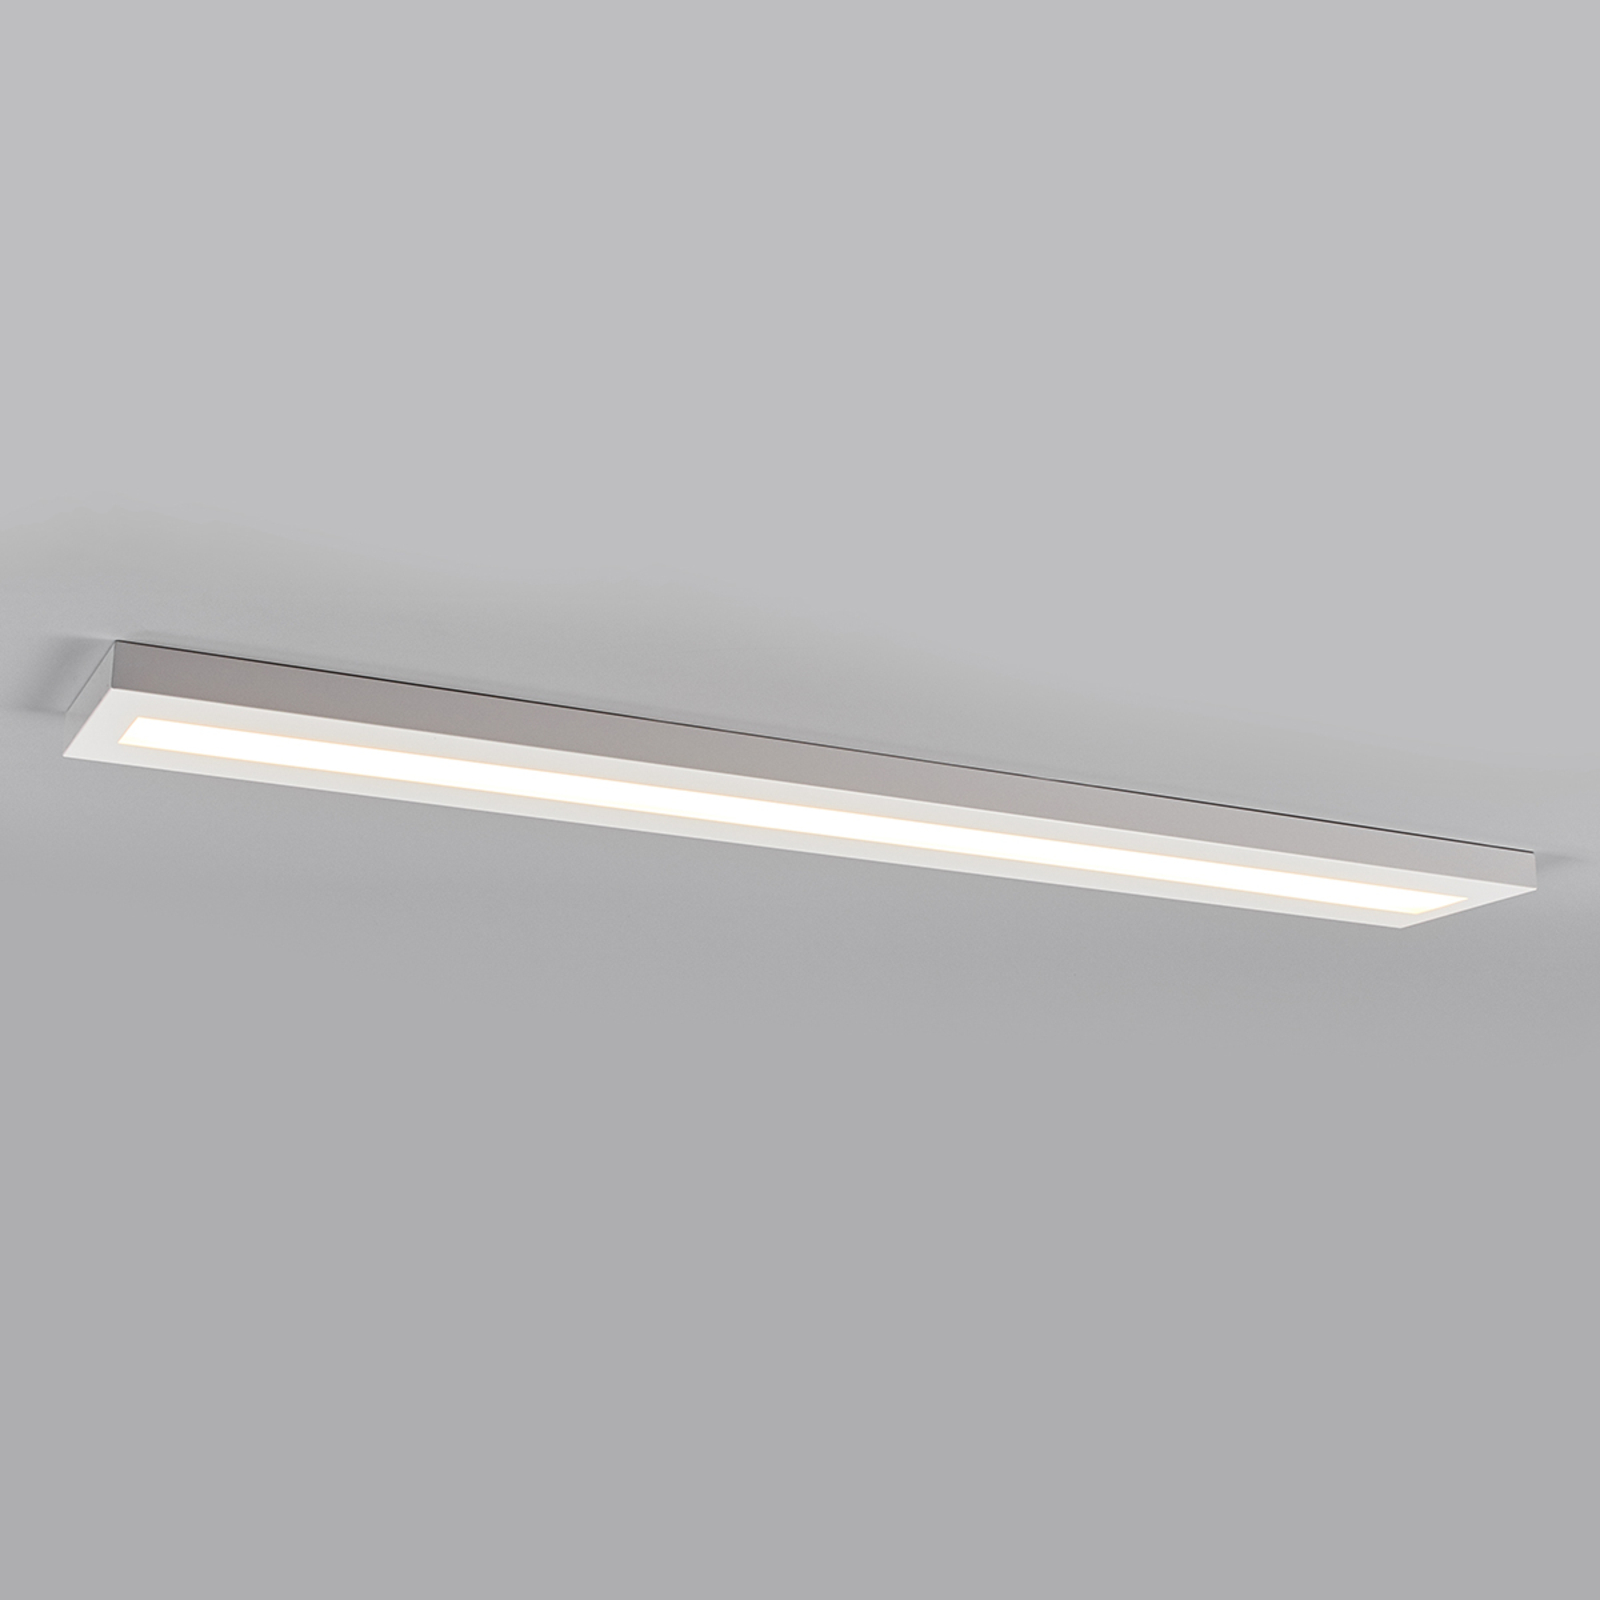 Išilginis paviršinis LED šviestuvas 150 cm, baltas, BAP